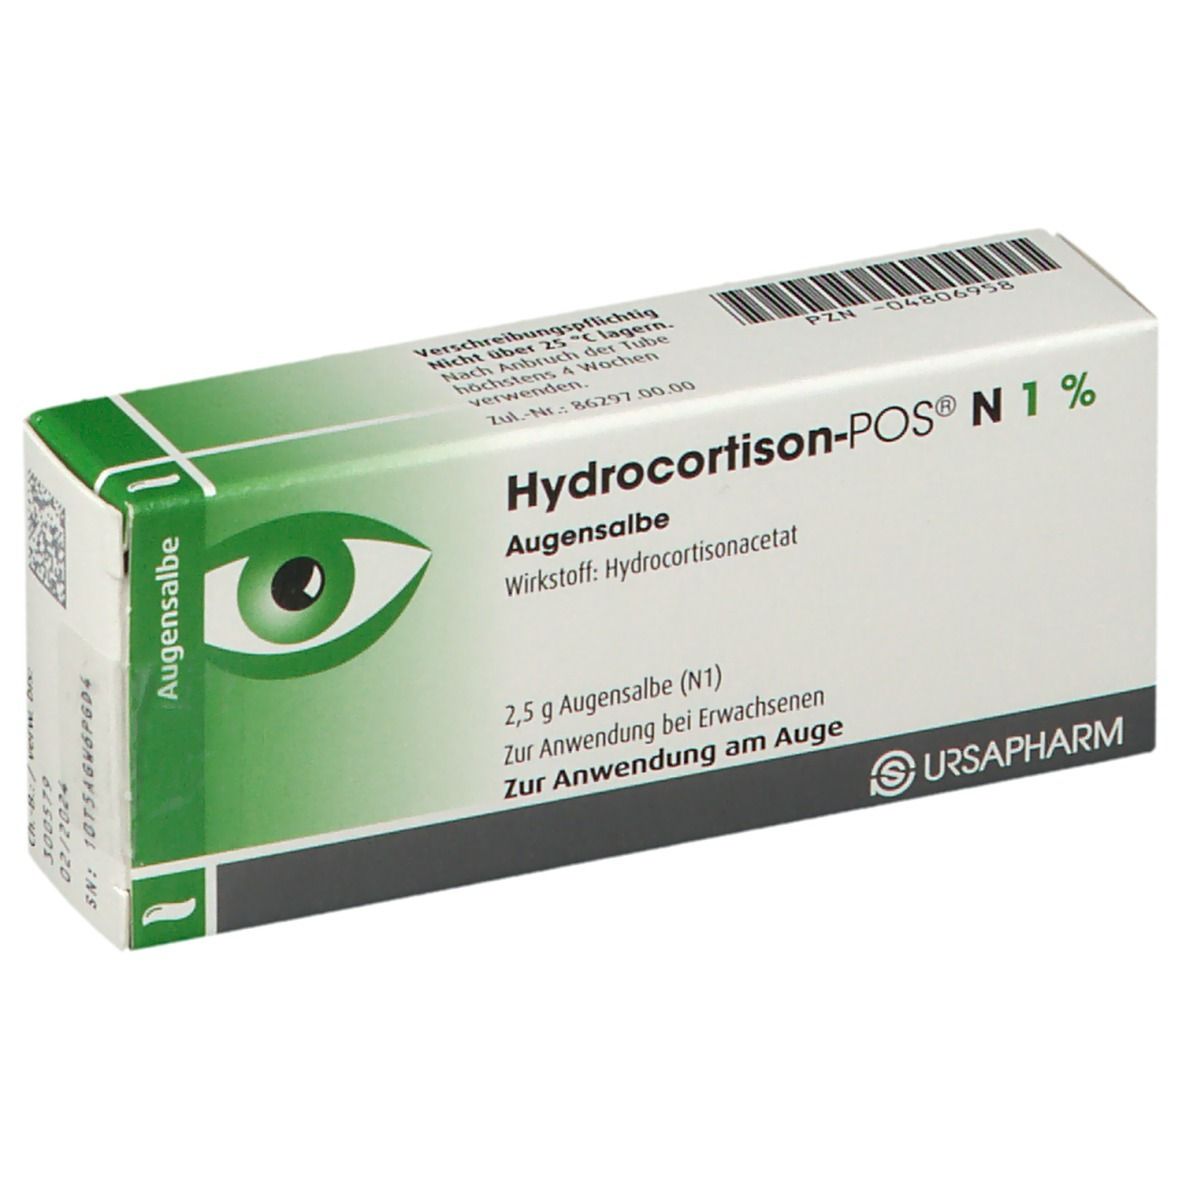 Hydrocortison POS® N 1%